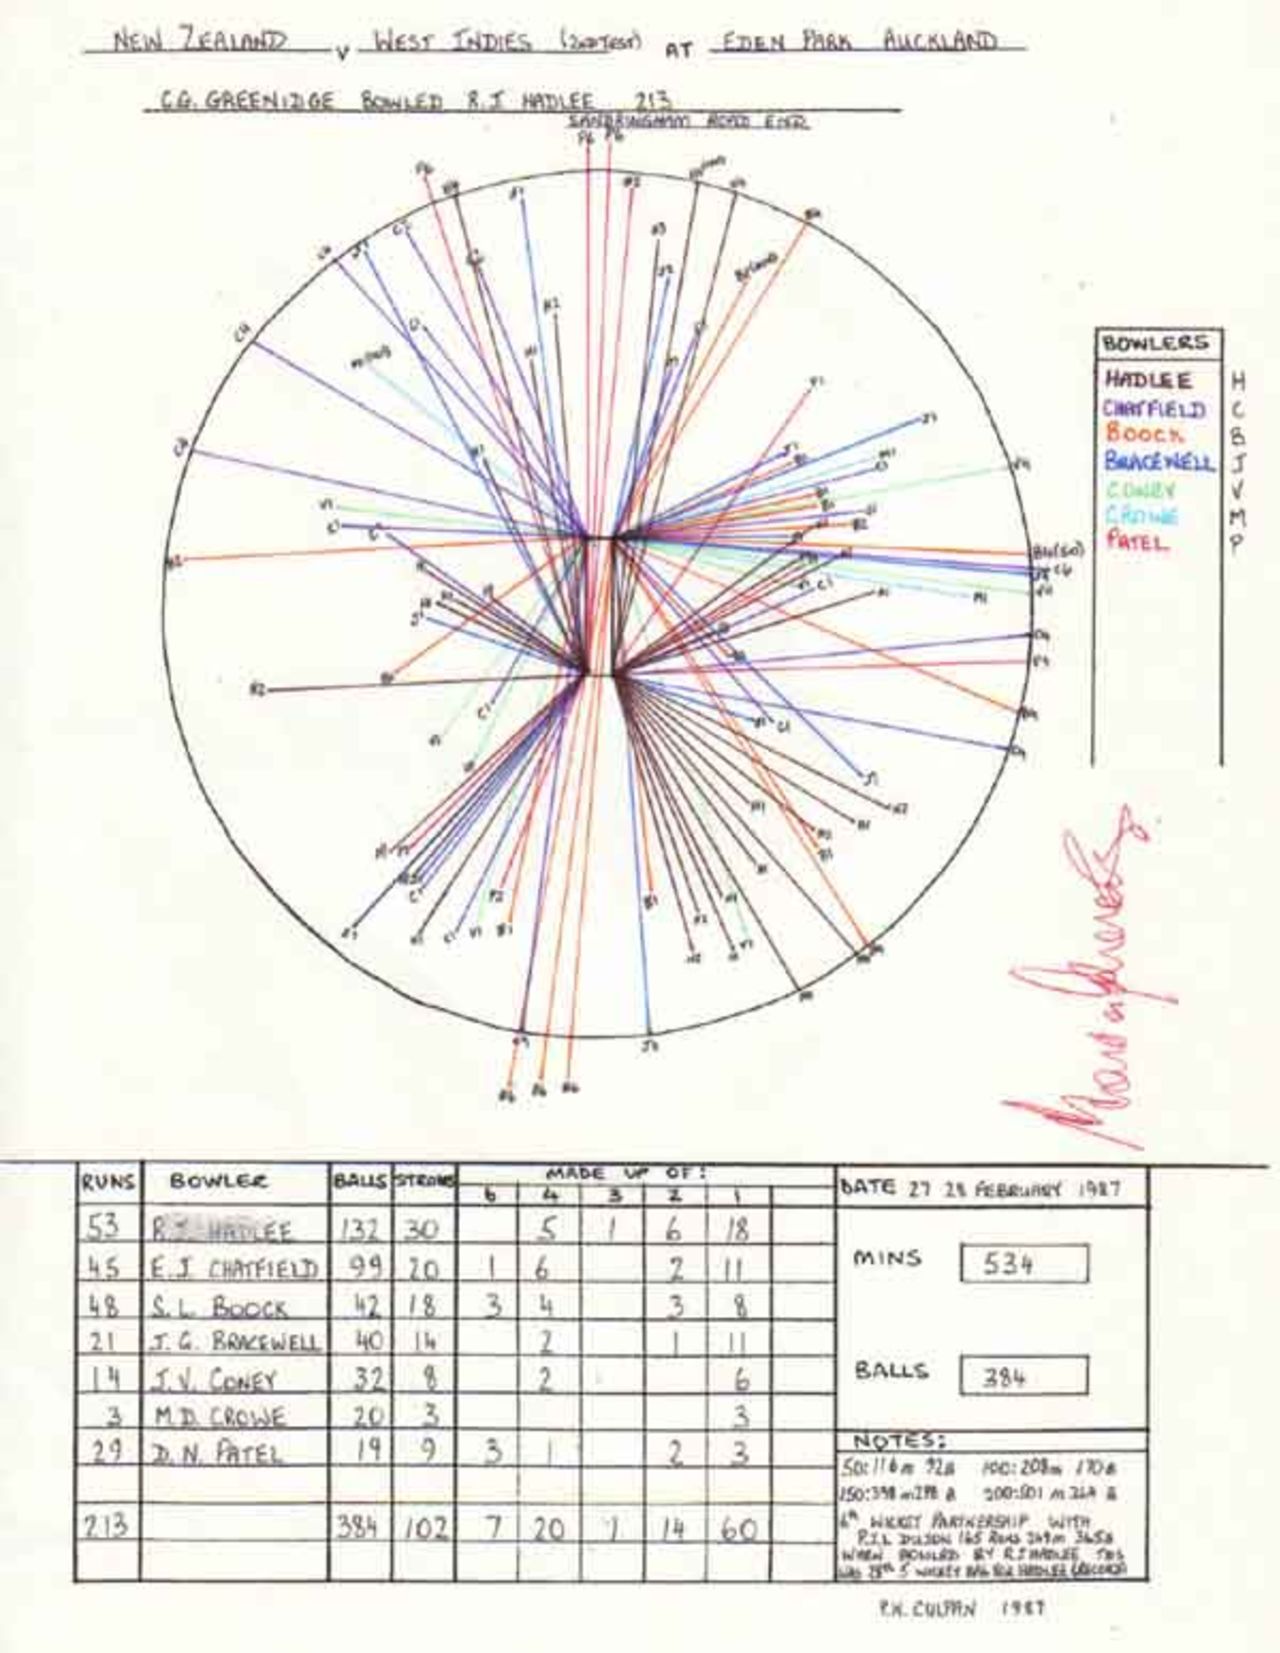 Wagon Wheel of Gordon Greenidge's 213 v New Zealand, Eden Park Auckland 27-28 February 1987